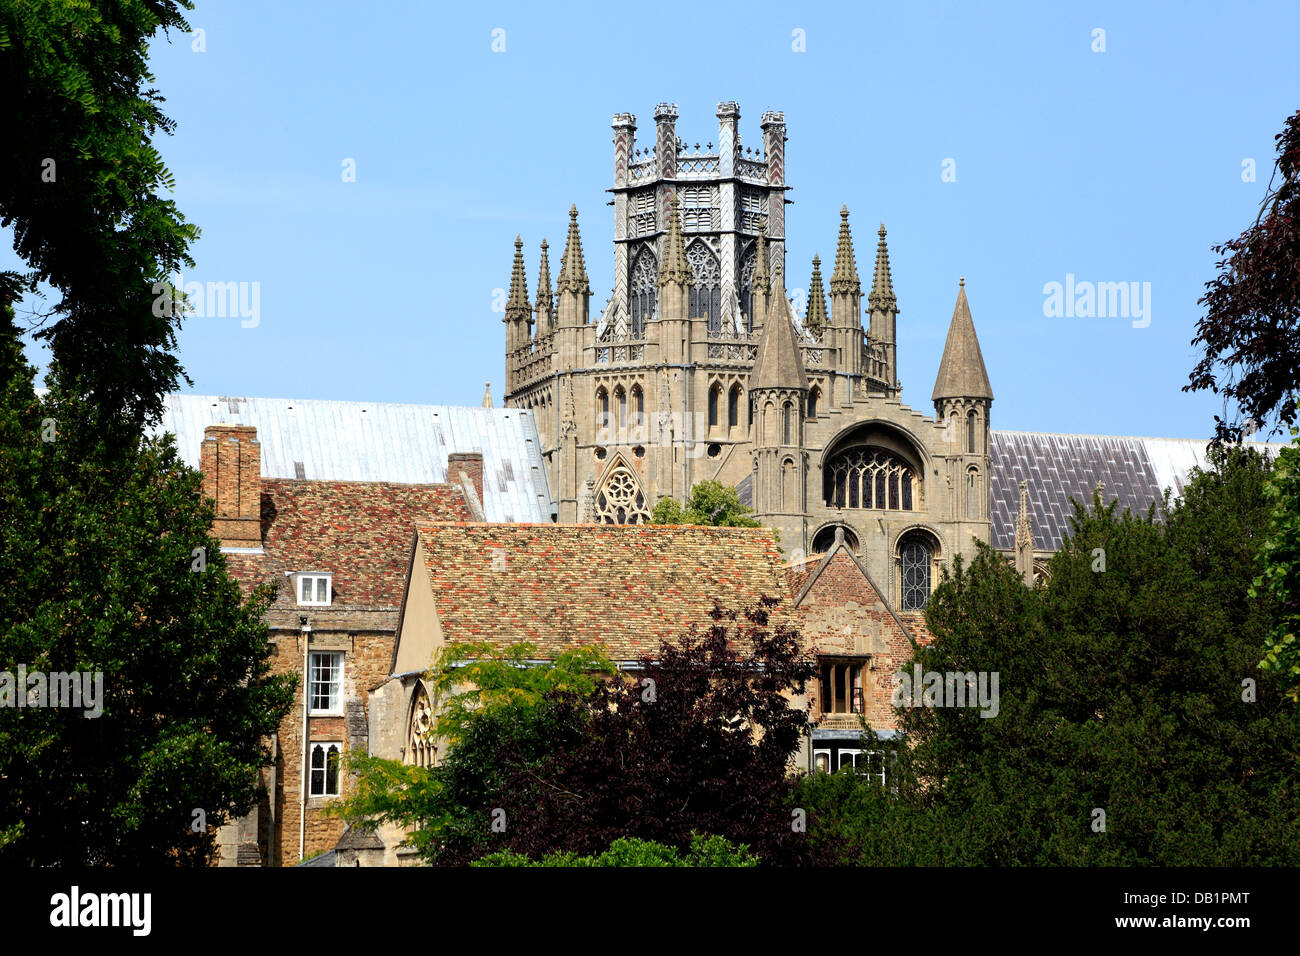 La catedral de Ely, torres y linterna octogonal, Cambridgeshire Inglaterra Inglés catedrales medievales del recinto de la torre Foto de stock